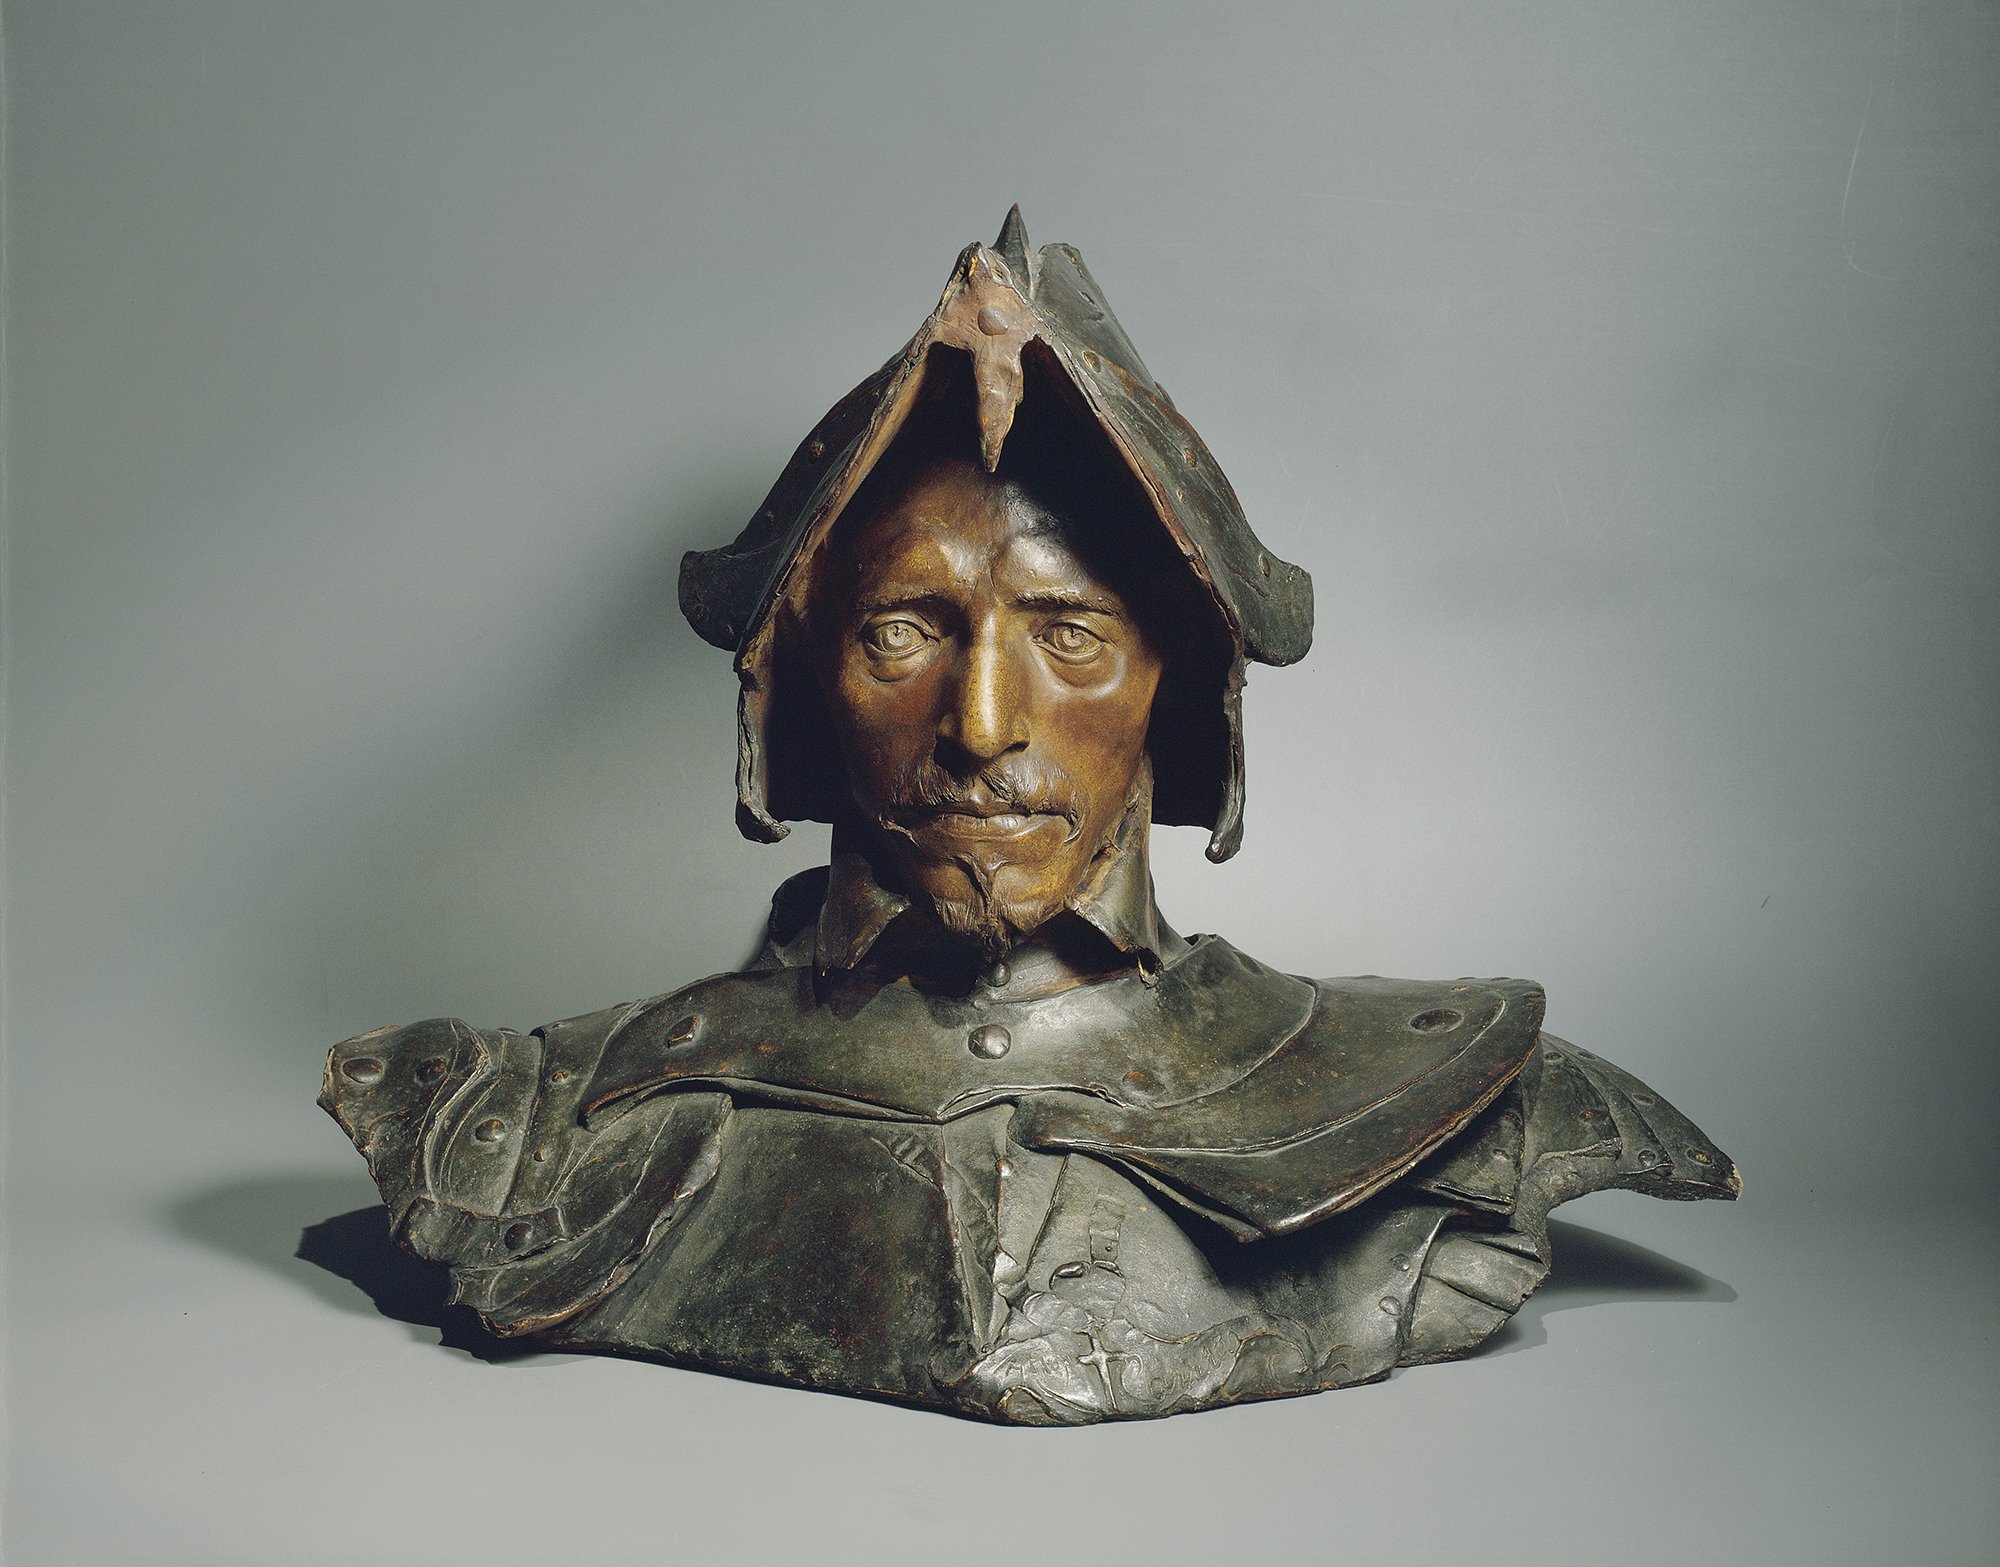 Abbildung der Skulptur "Der Krieger" von Jean Carriès aus dem Jahr 1881. Die Skulptur ist eine Büste und zeigt einen Soldaten mit Helm.